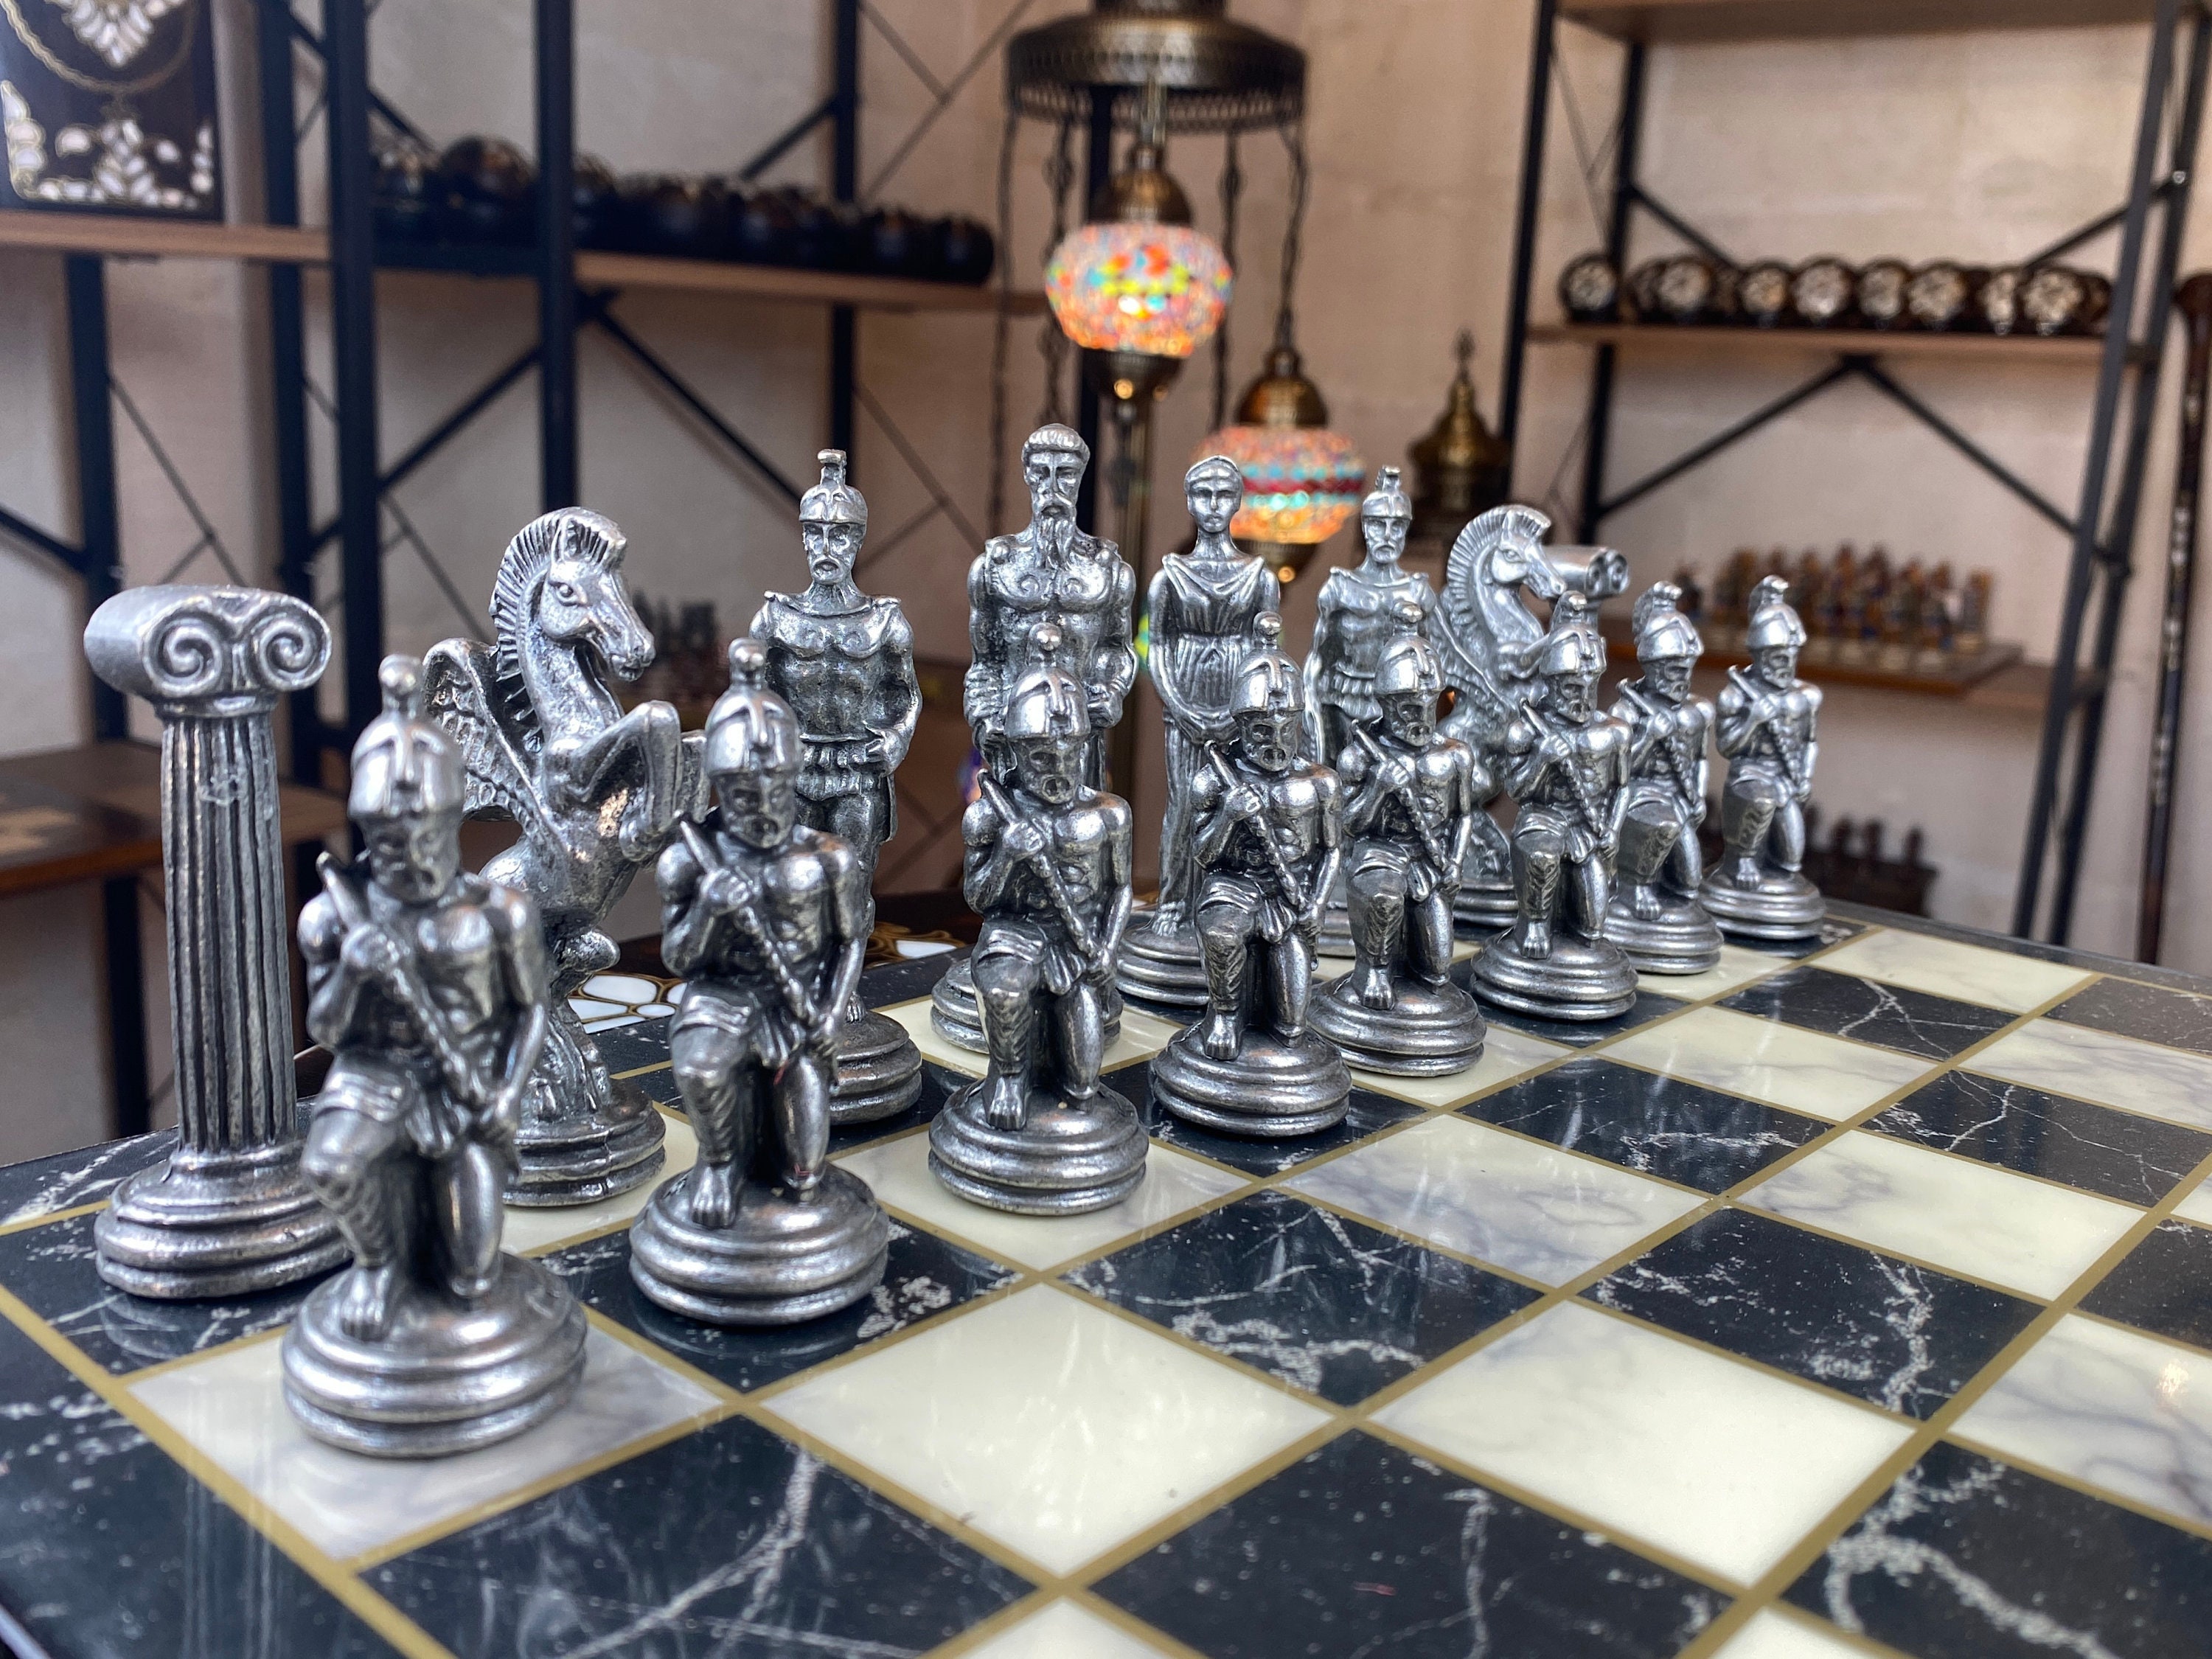 Great Kingdom Schach Spiel und Dame Spiel